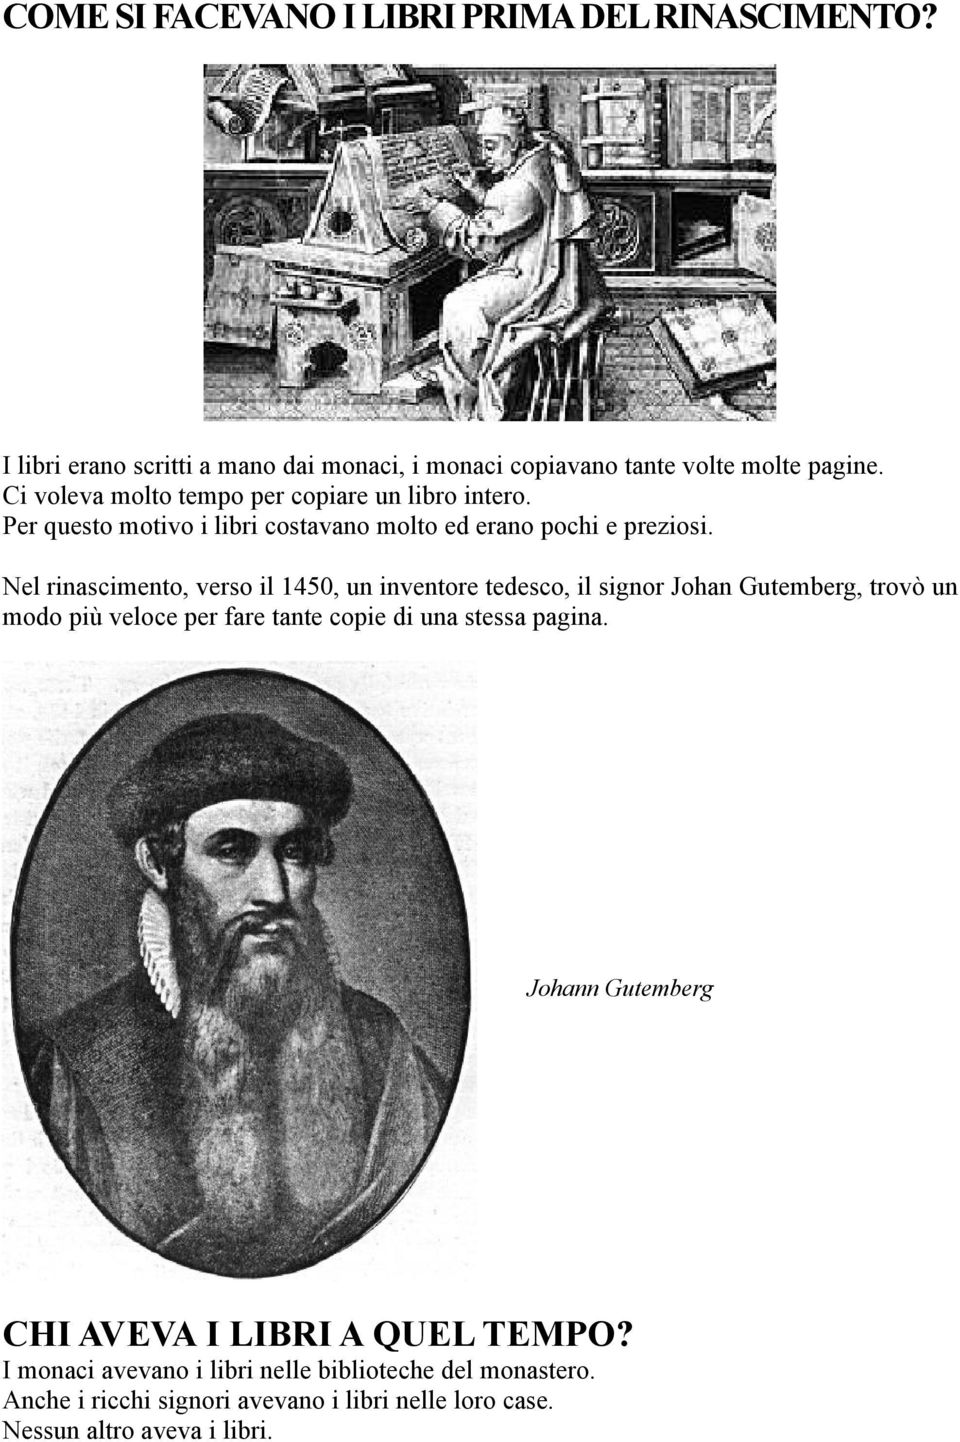 Nel rinascimento, verso il 1450, un inventore tedesco, il signor Johan Gutemberg, trovò un modo più veloce per fare tante copie di una stessa pagina.